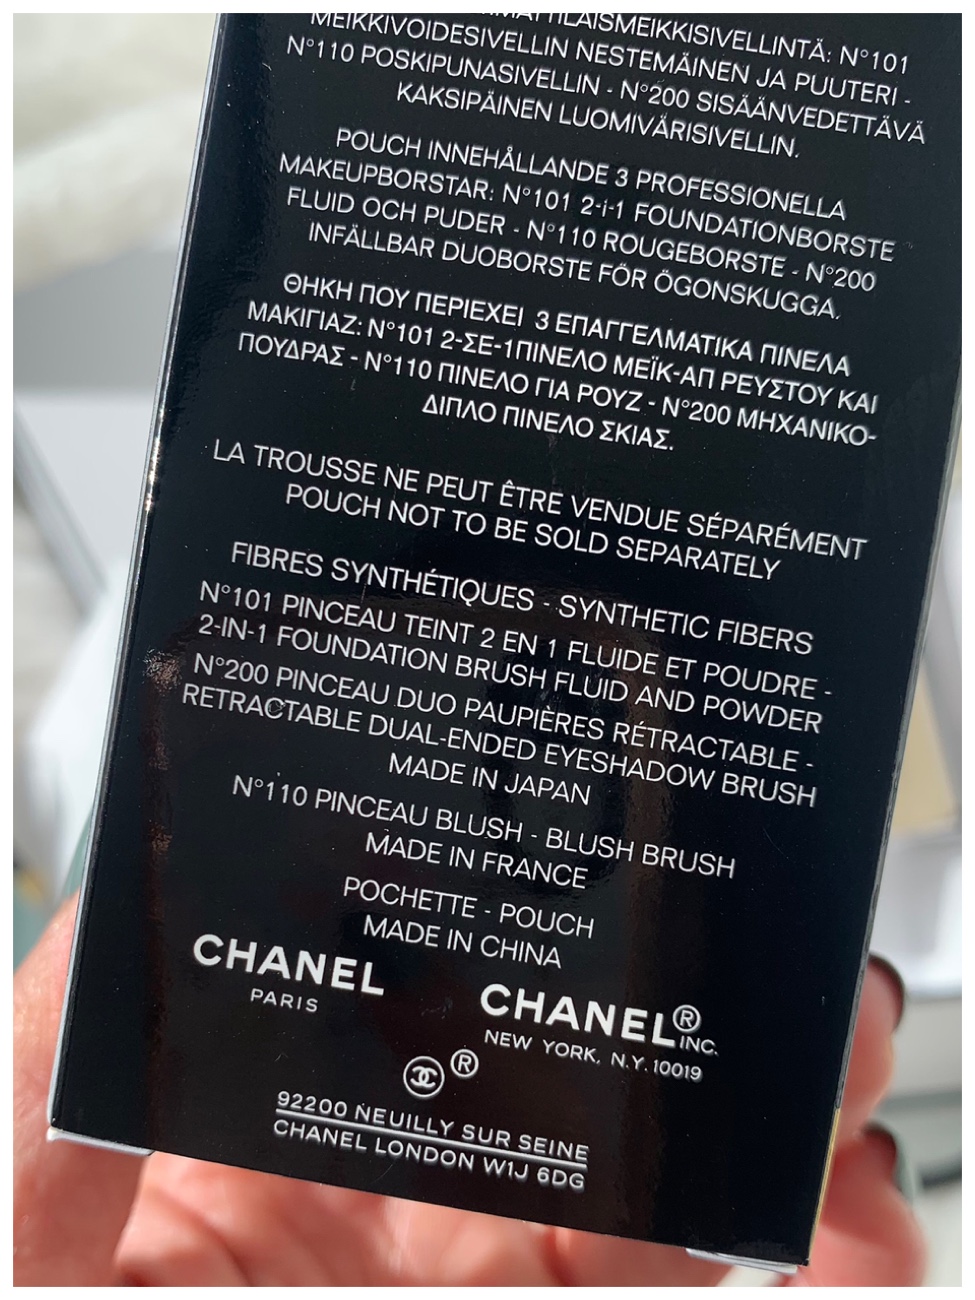 Chanel Codes Couleur 2023